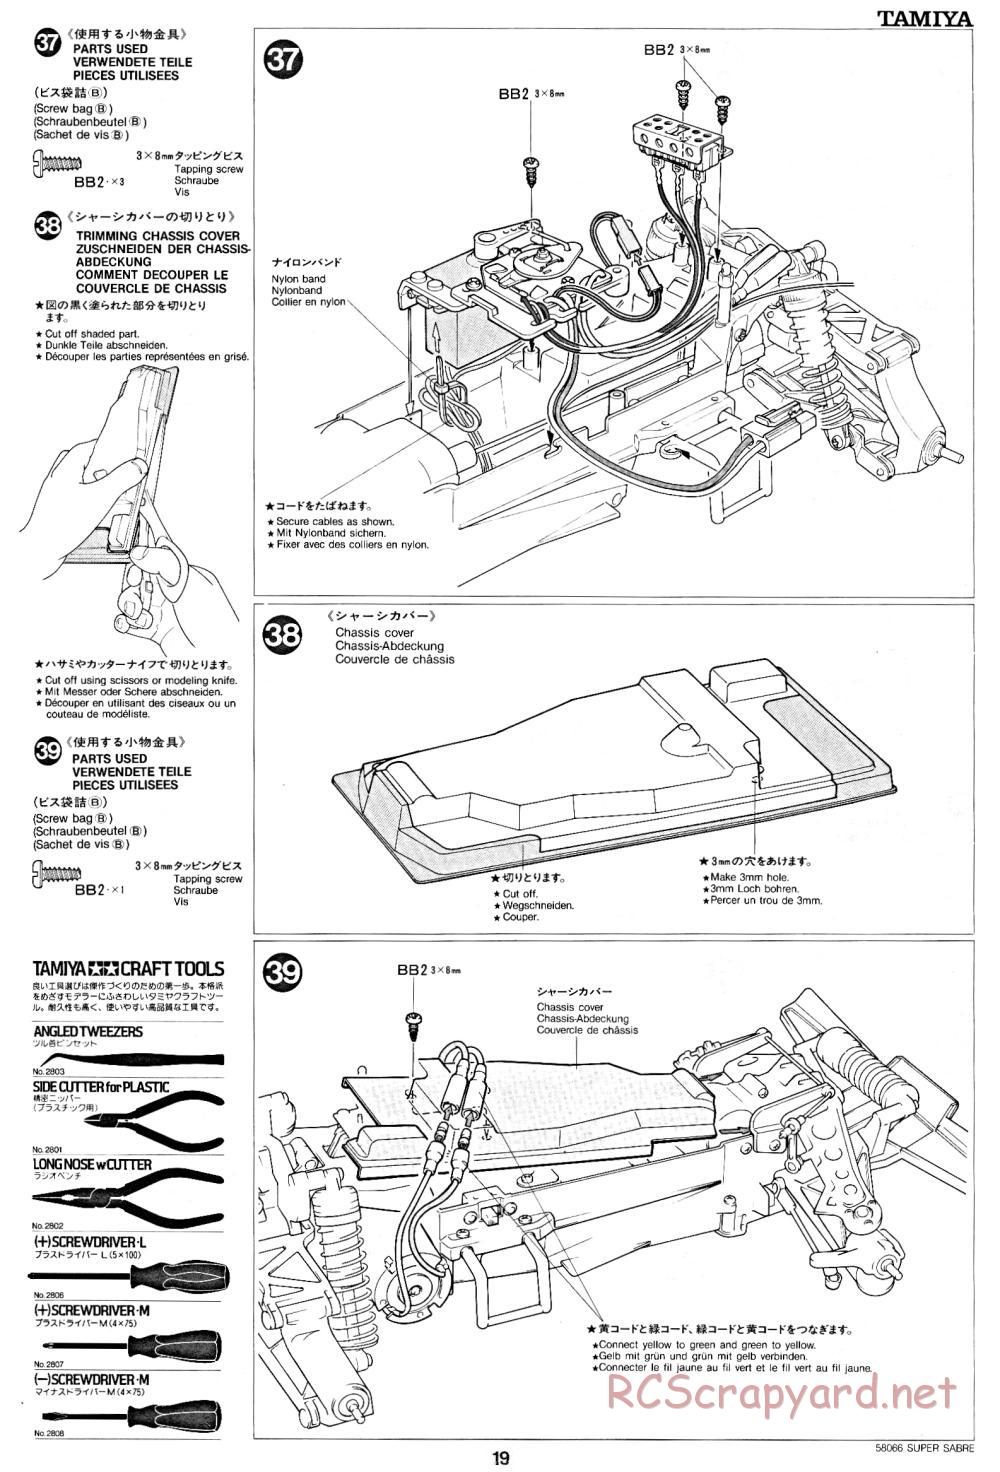 Tamiya - Super Sabre - 58066 - Manual - Page 19